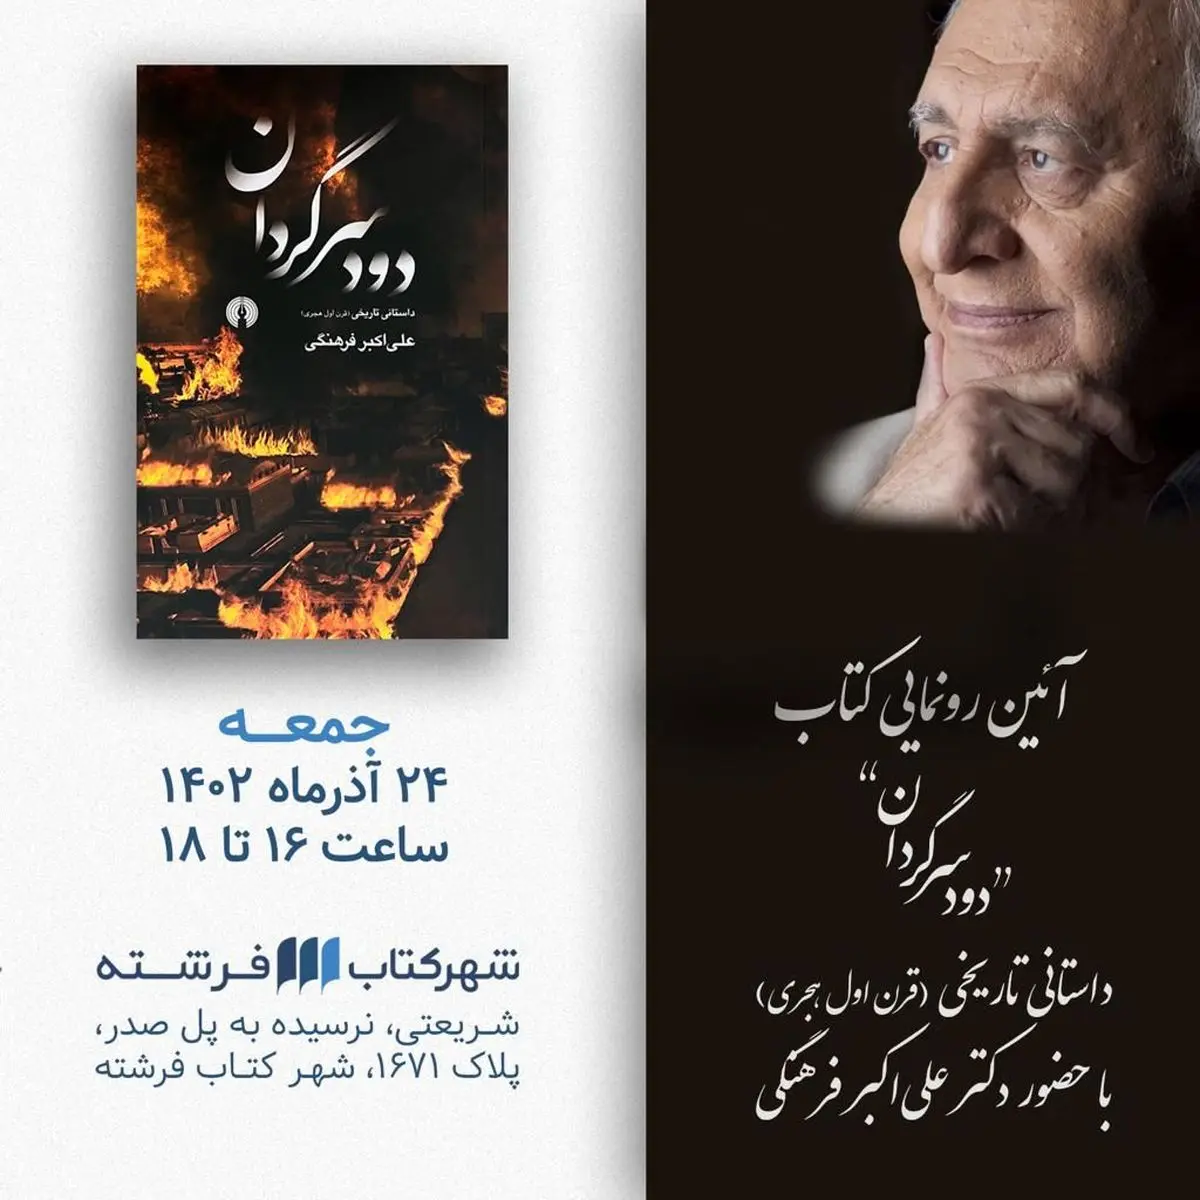 رونمایی کتاب دود سرگردان با حضور فرماندار تهران+ویدئو 